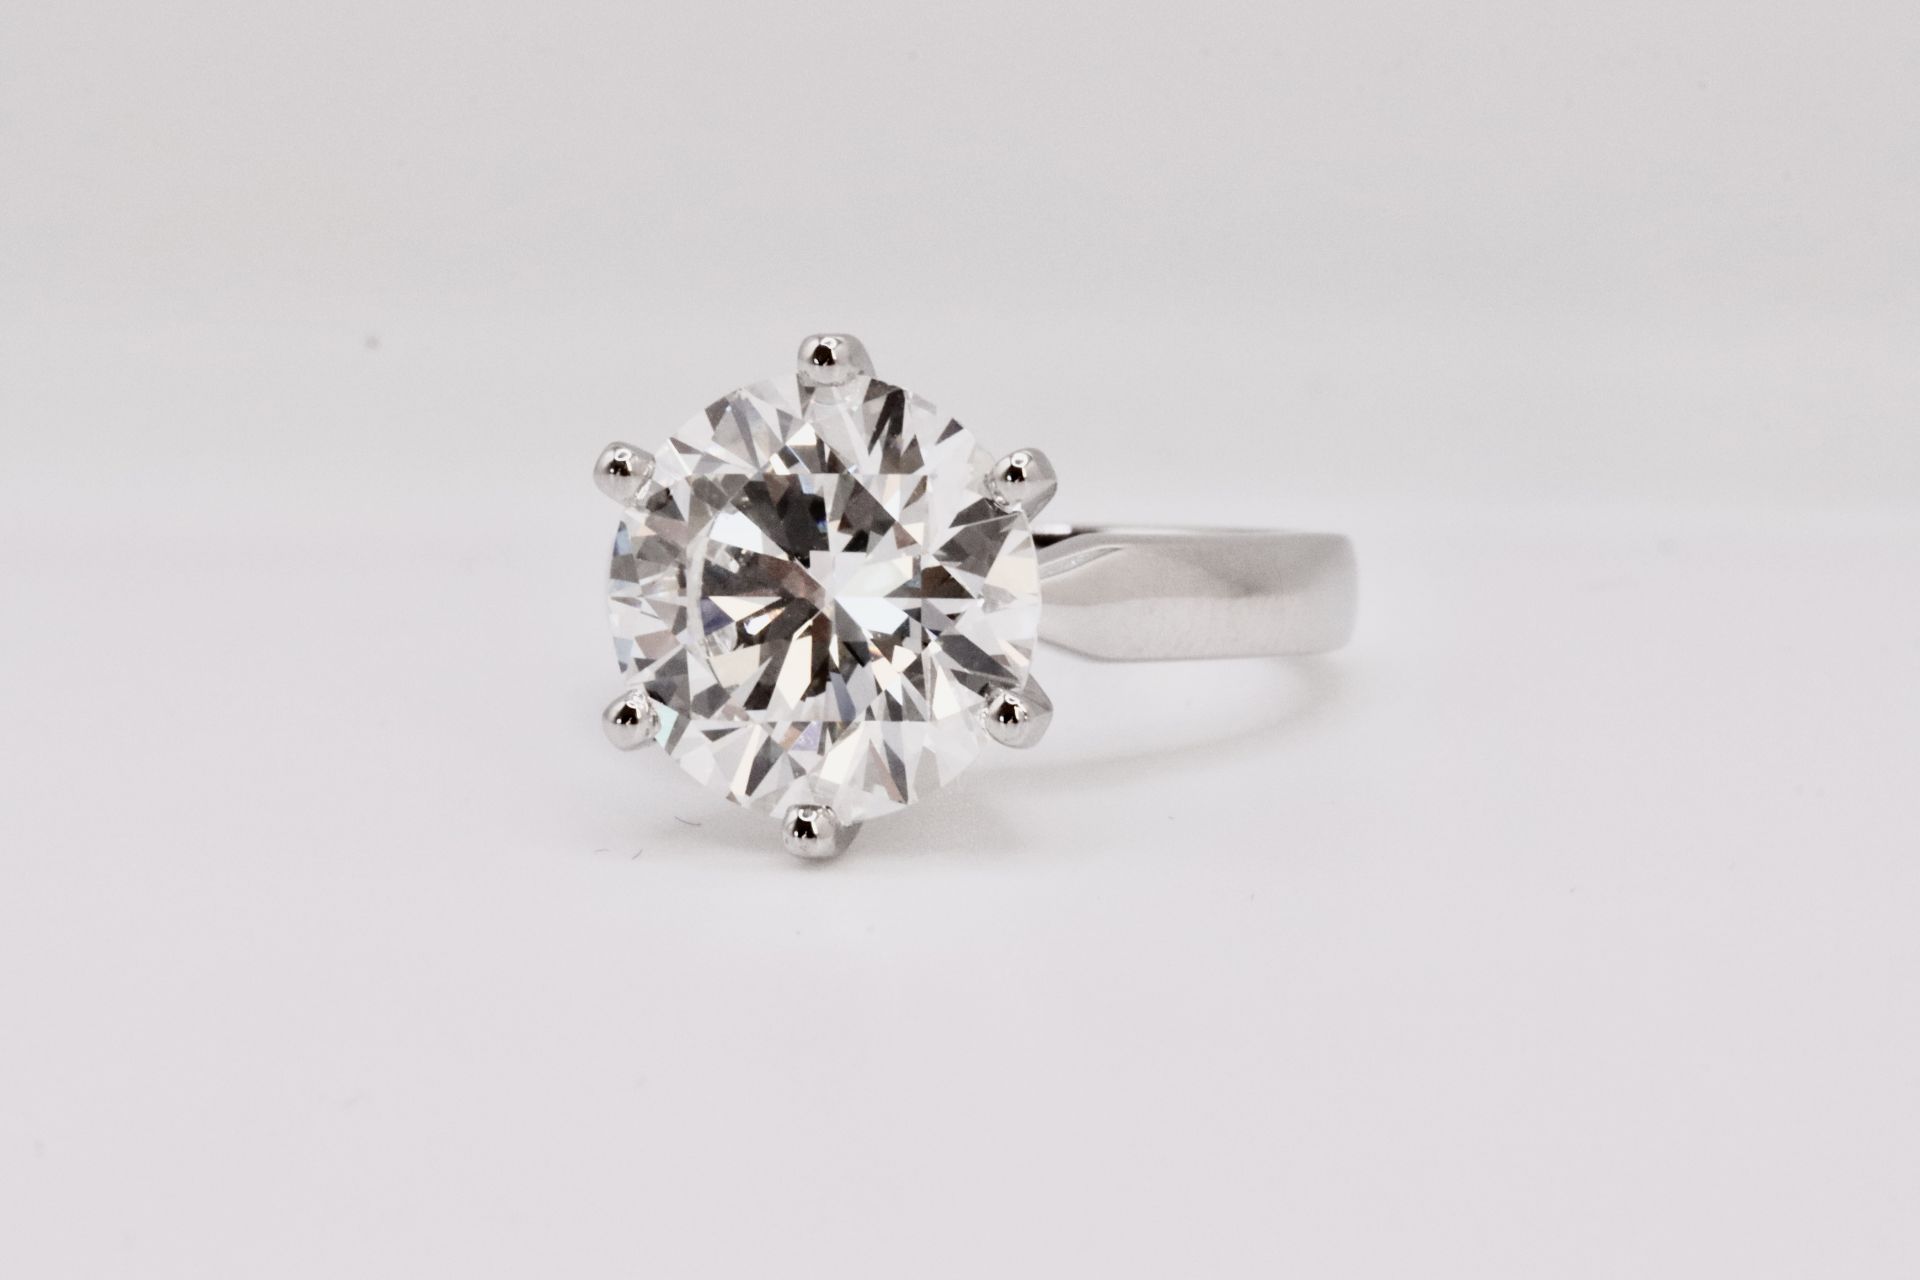 Round Brilliant Cut 5.00 Carat Diamond Ring Set in Platinum - F Colour VVS Clarity - IGI - Image 3 of 6